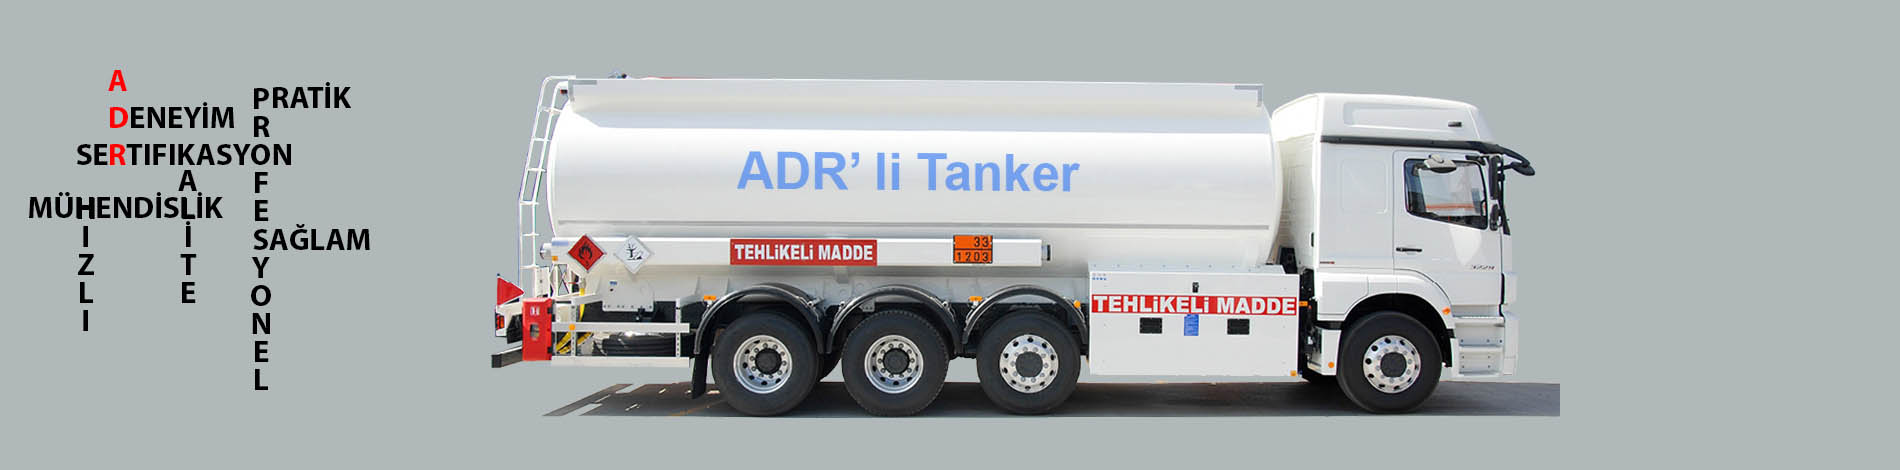 ADR Tank ve Tanker Onayı 